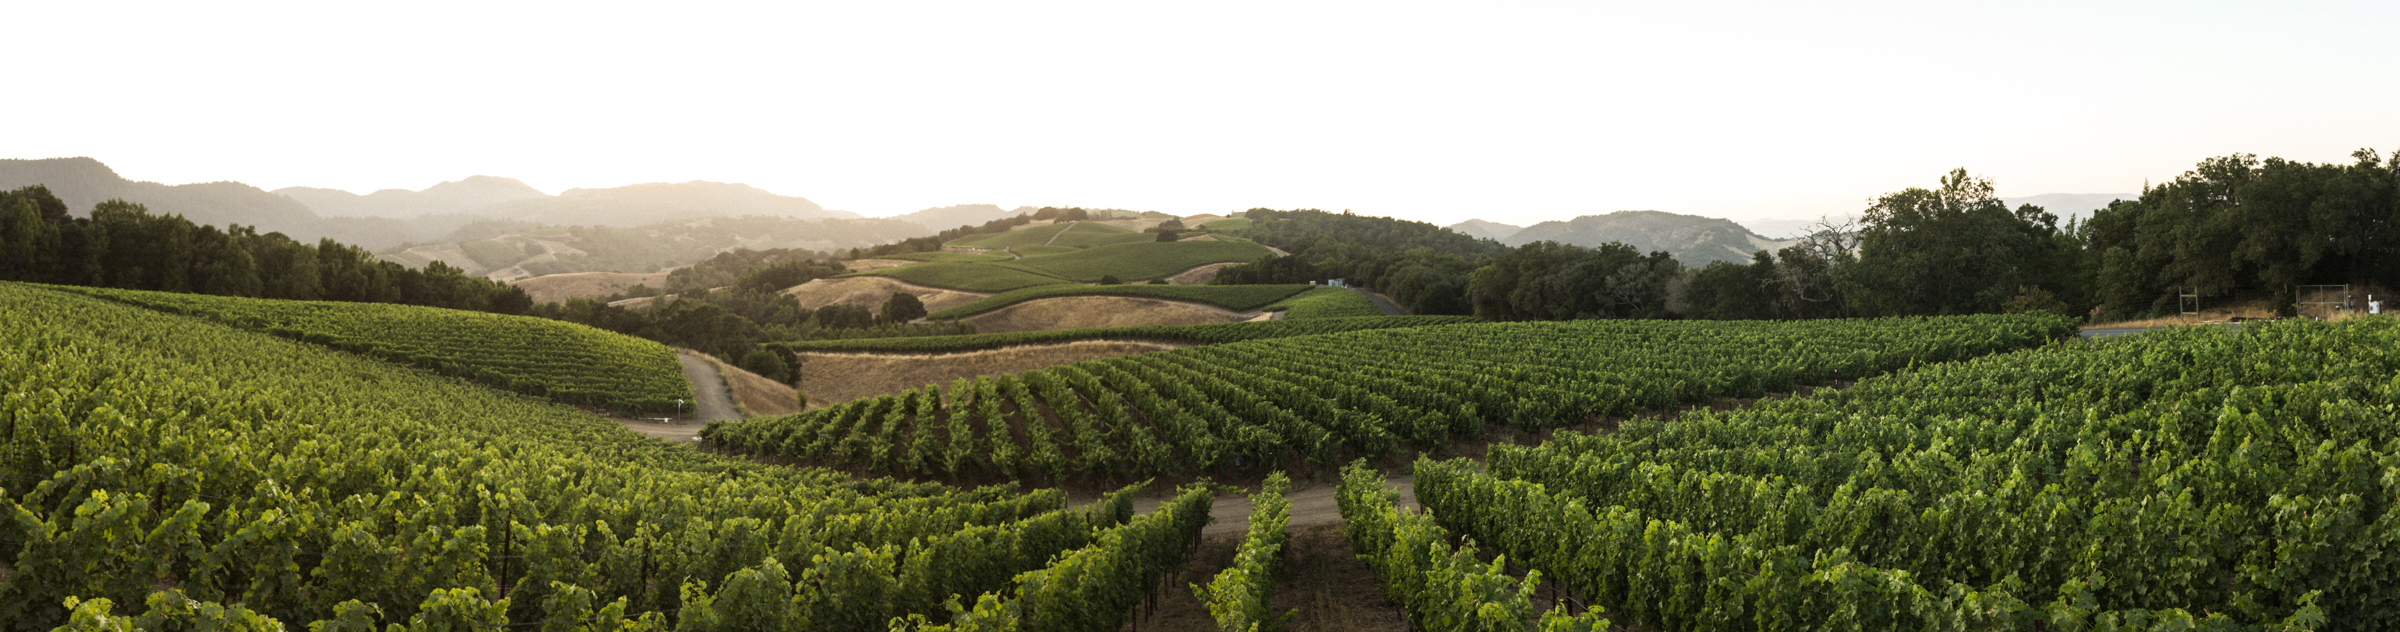 Progeny Vineyard panorama photo